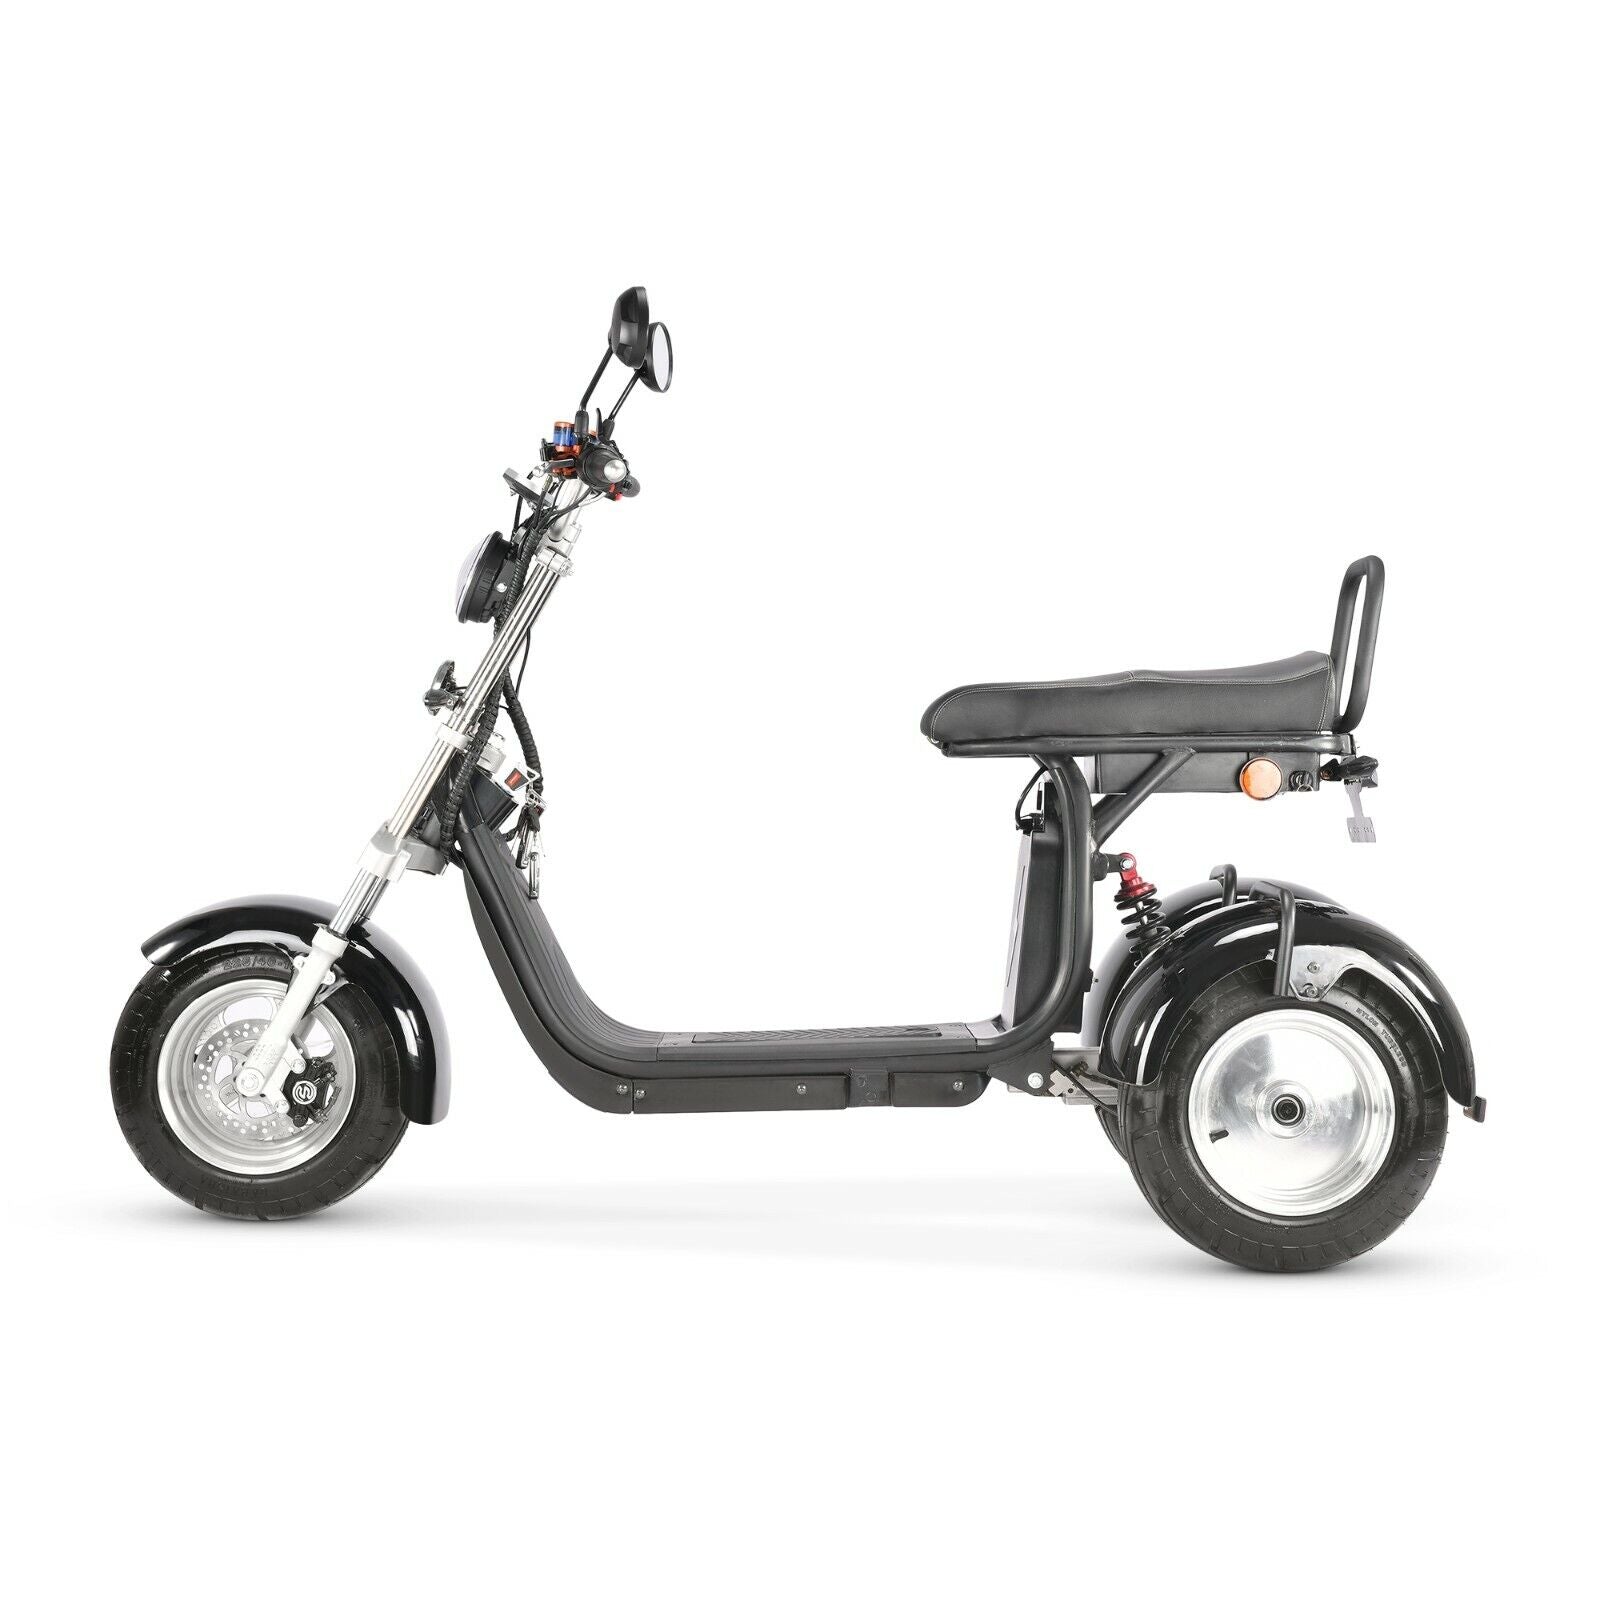 Scooter électrique 3 roues City Coco Stable Trike 4000W -